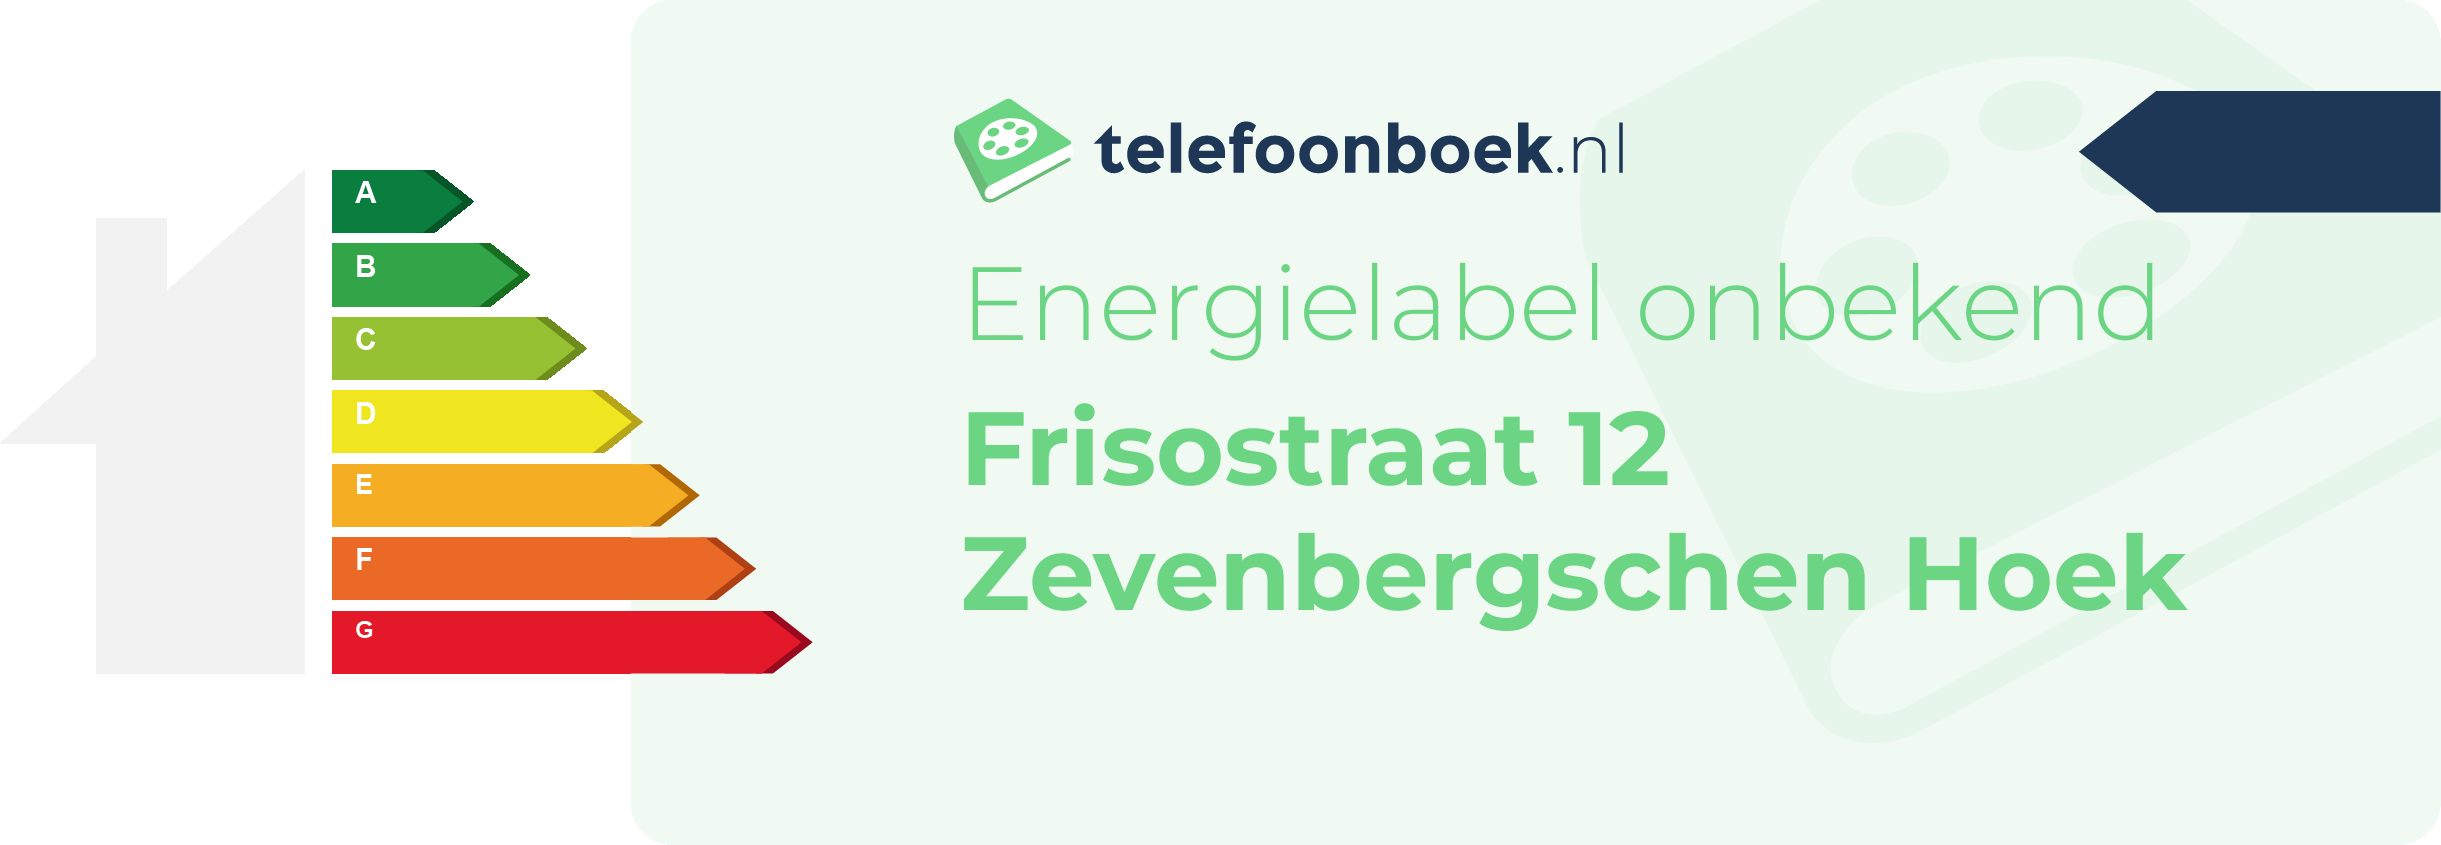 Energielabel Frisostraat 12 Zevenbergschen Hoek